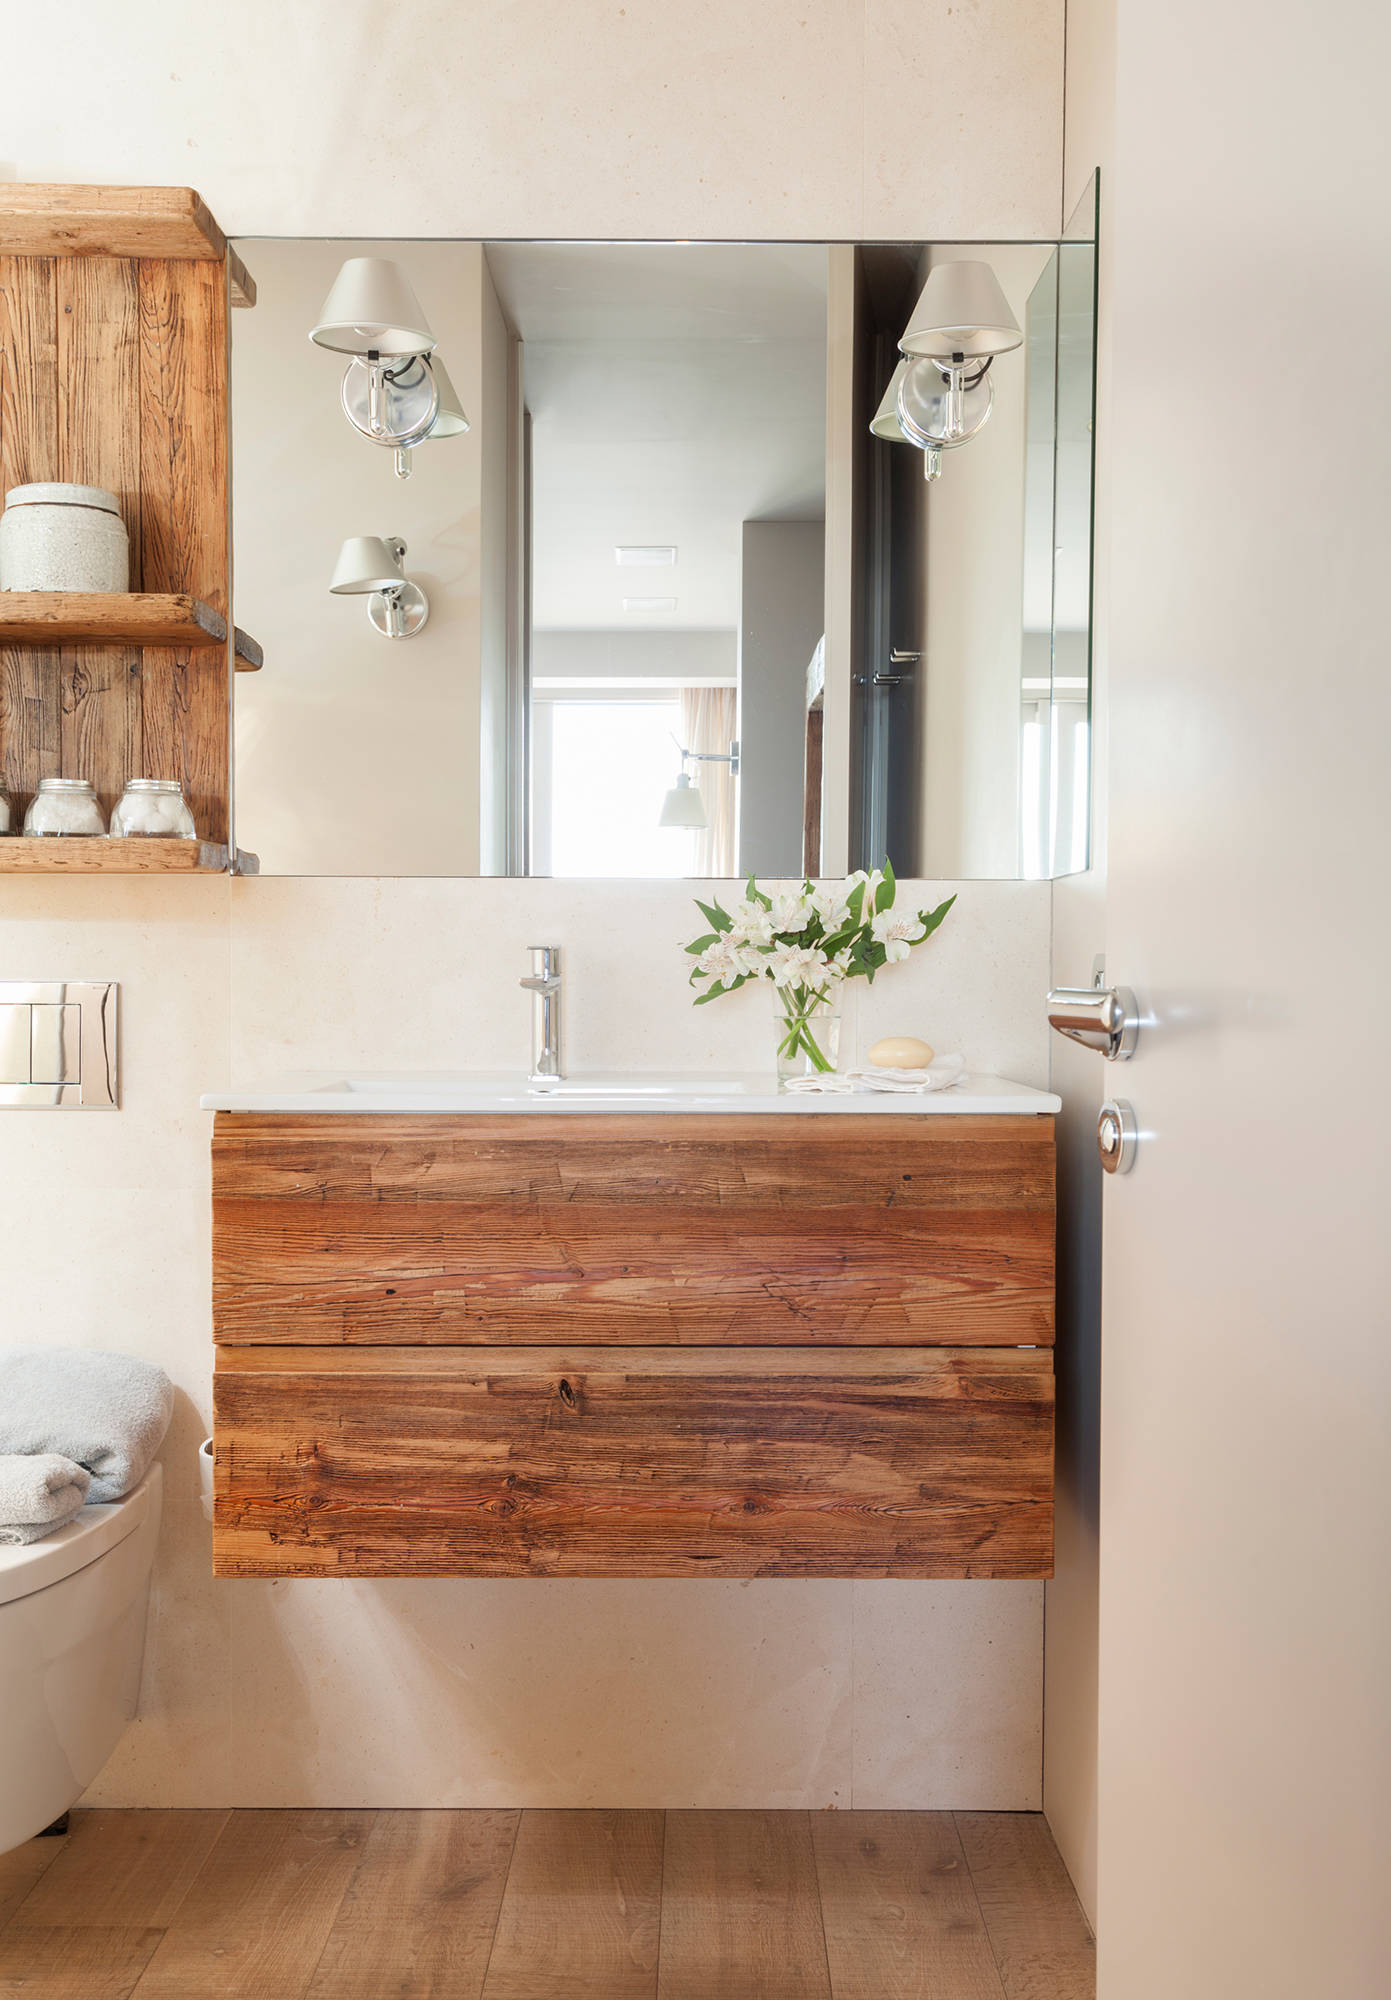 Mueble de baño suspendido y estantería sobre el inodoro realizados en madera.